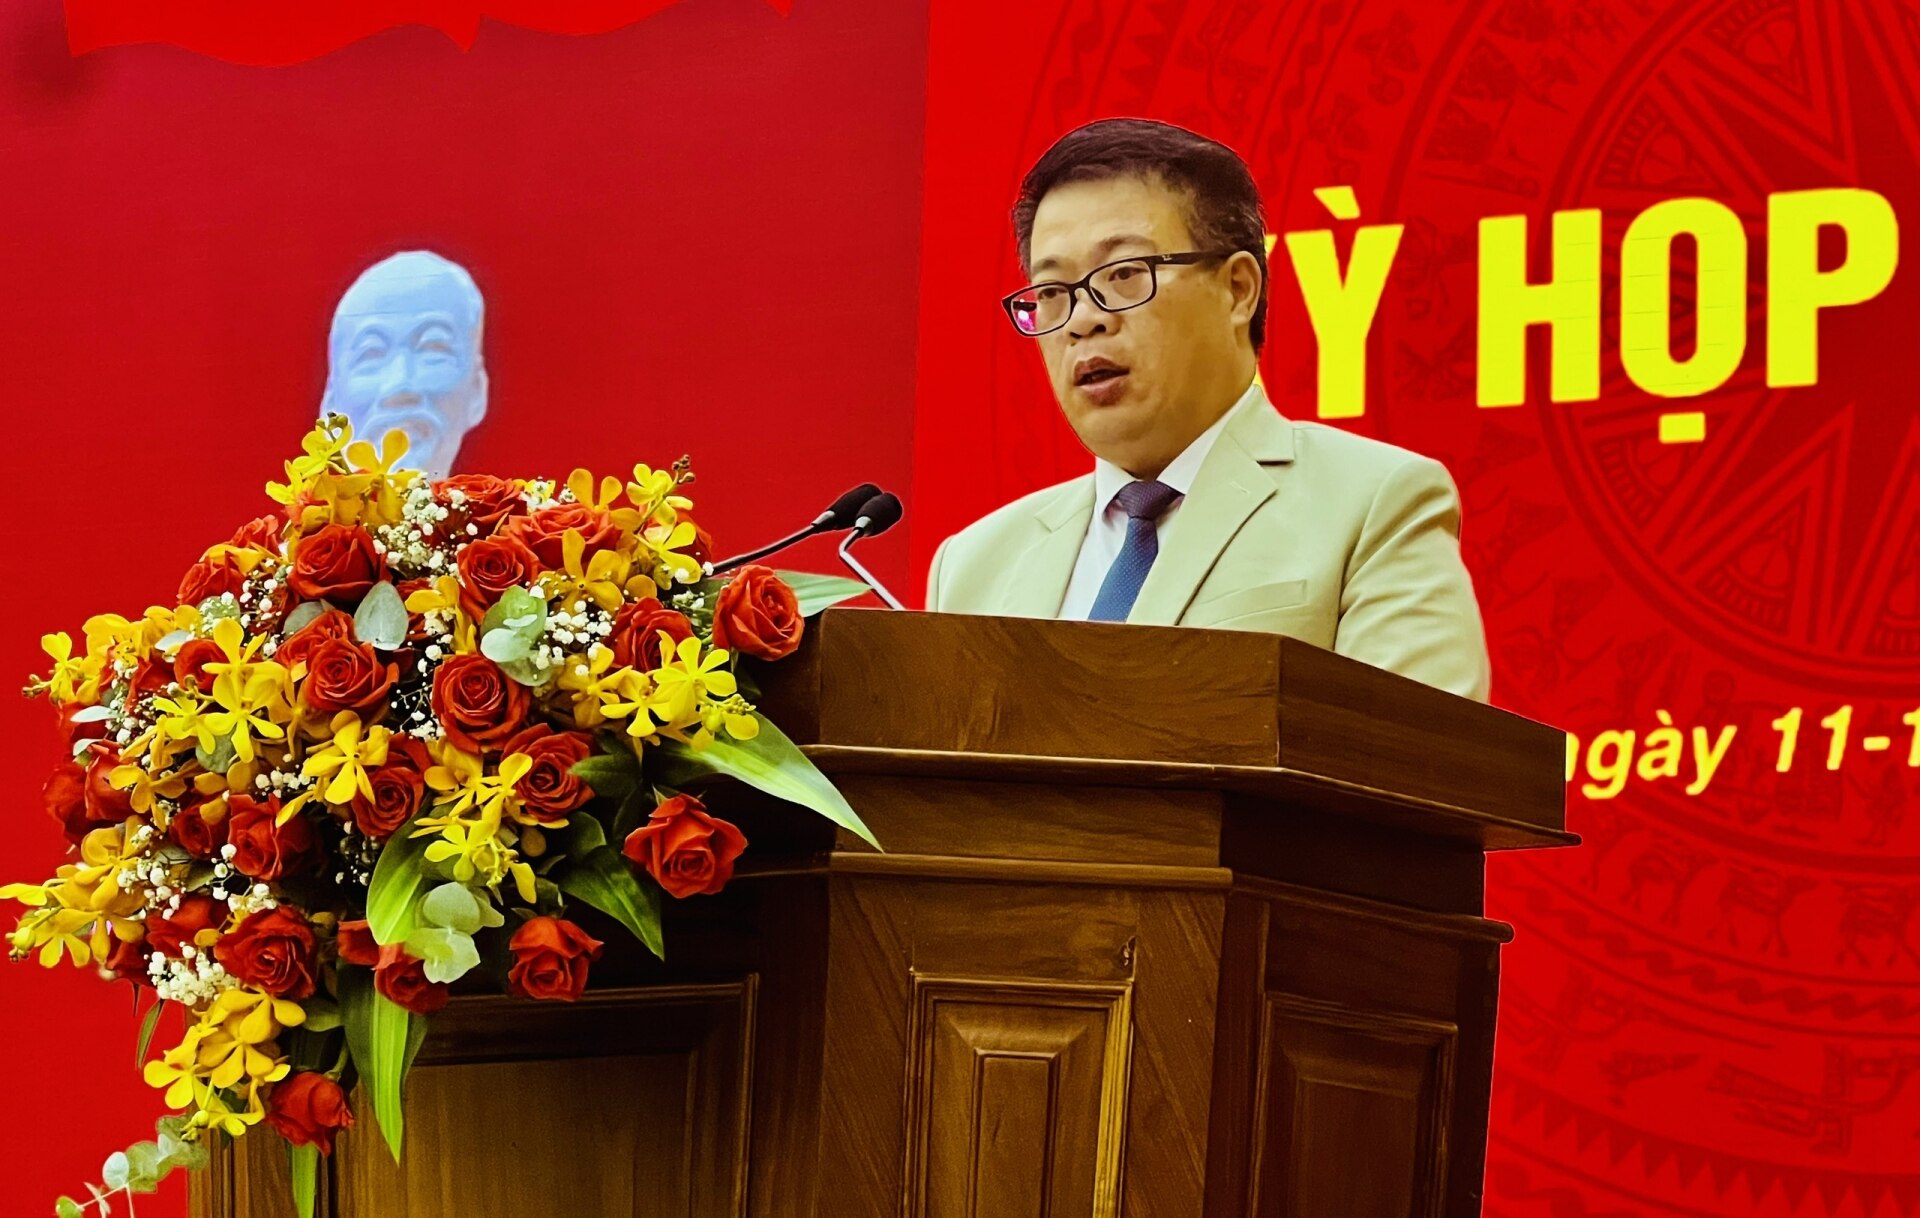 Phó Chủ tịch UBND tỉnh Nguyễn Ngọc Phúc báo cáo về kết quả thực hiện nhiệm vụ kinh tế - xã hội 6 tháng đầu năm